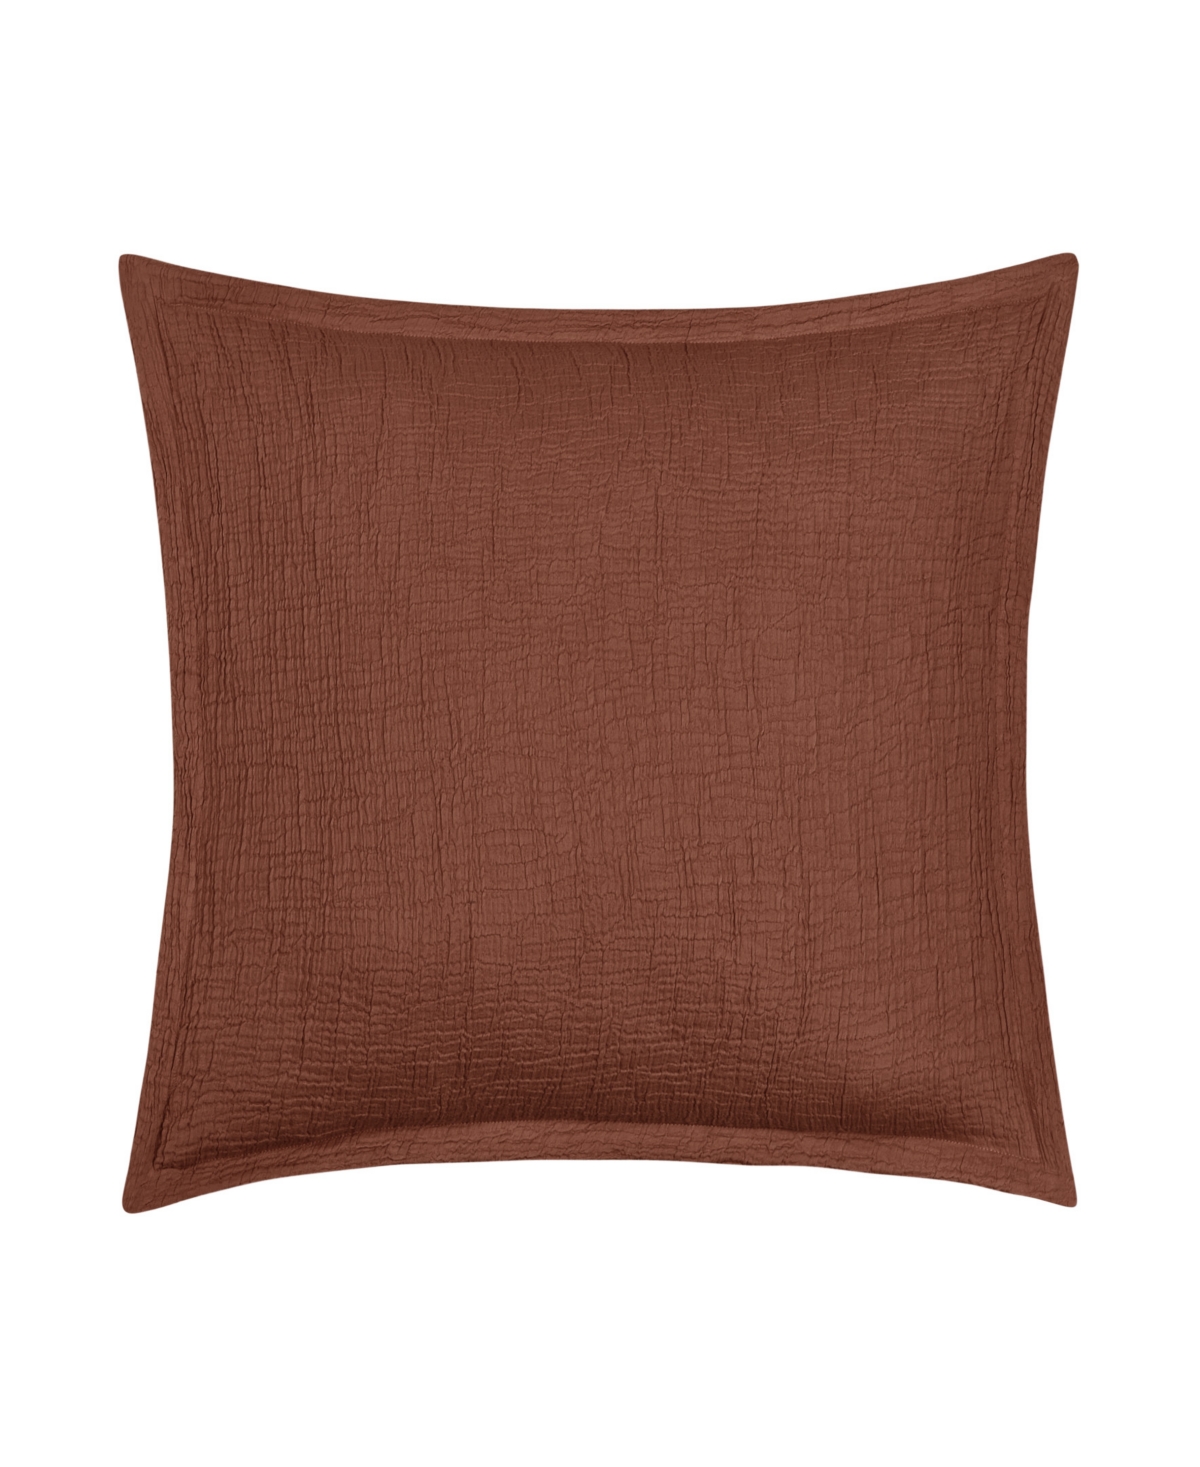 White Sand South Seas Square Decorative Pillow Cover, 20" X 20" In Cinnamon